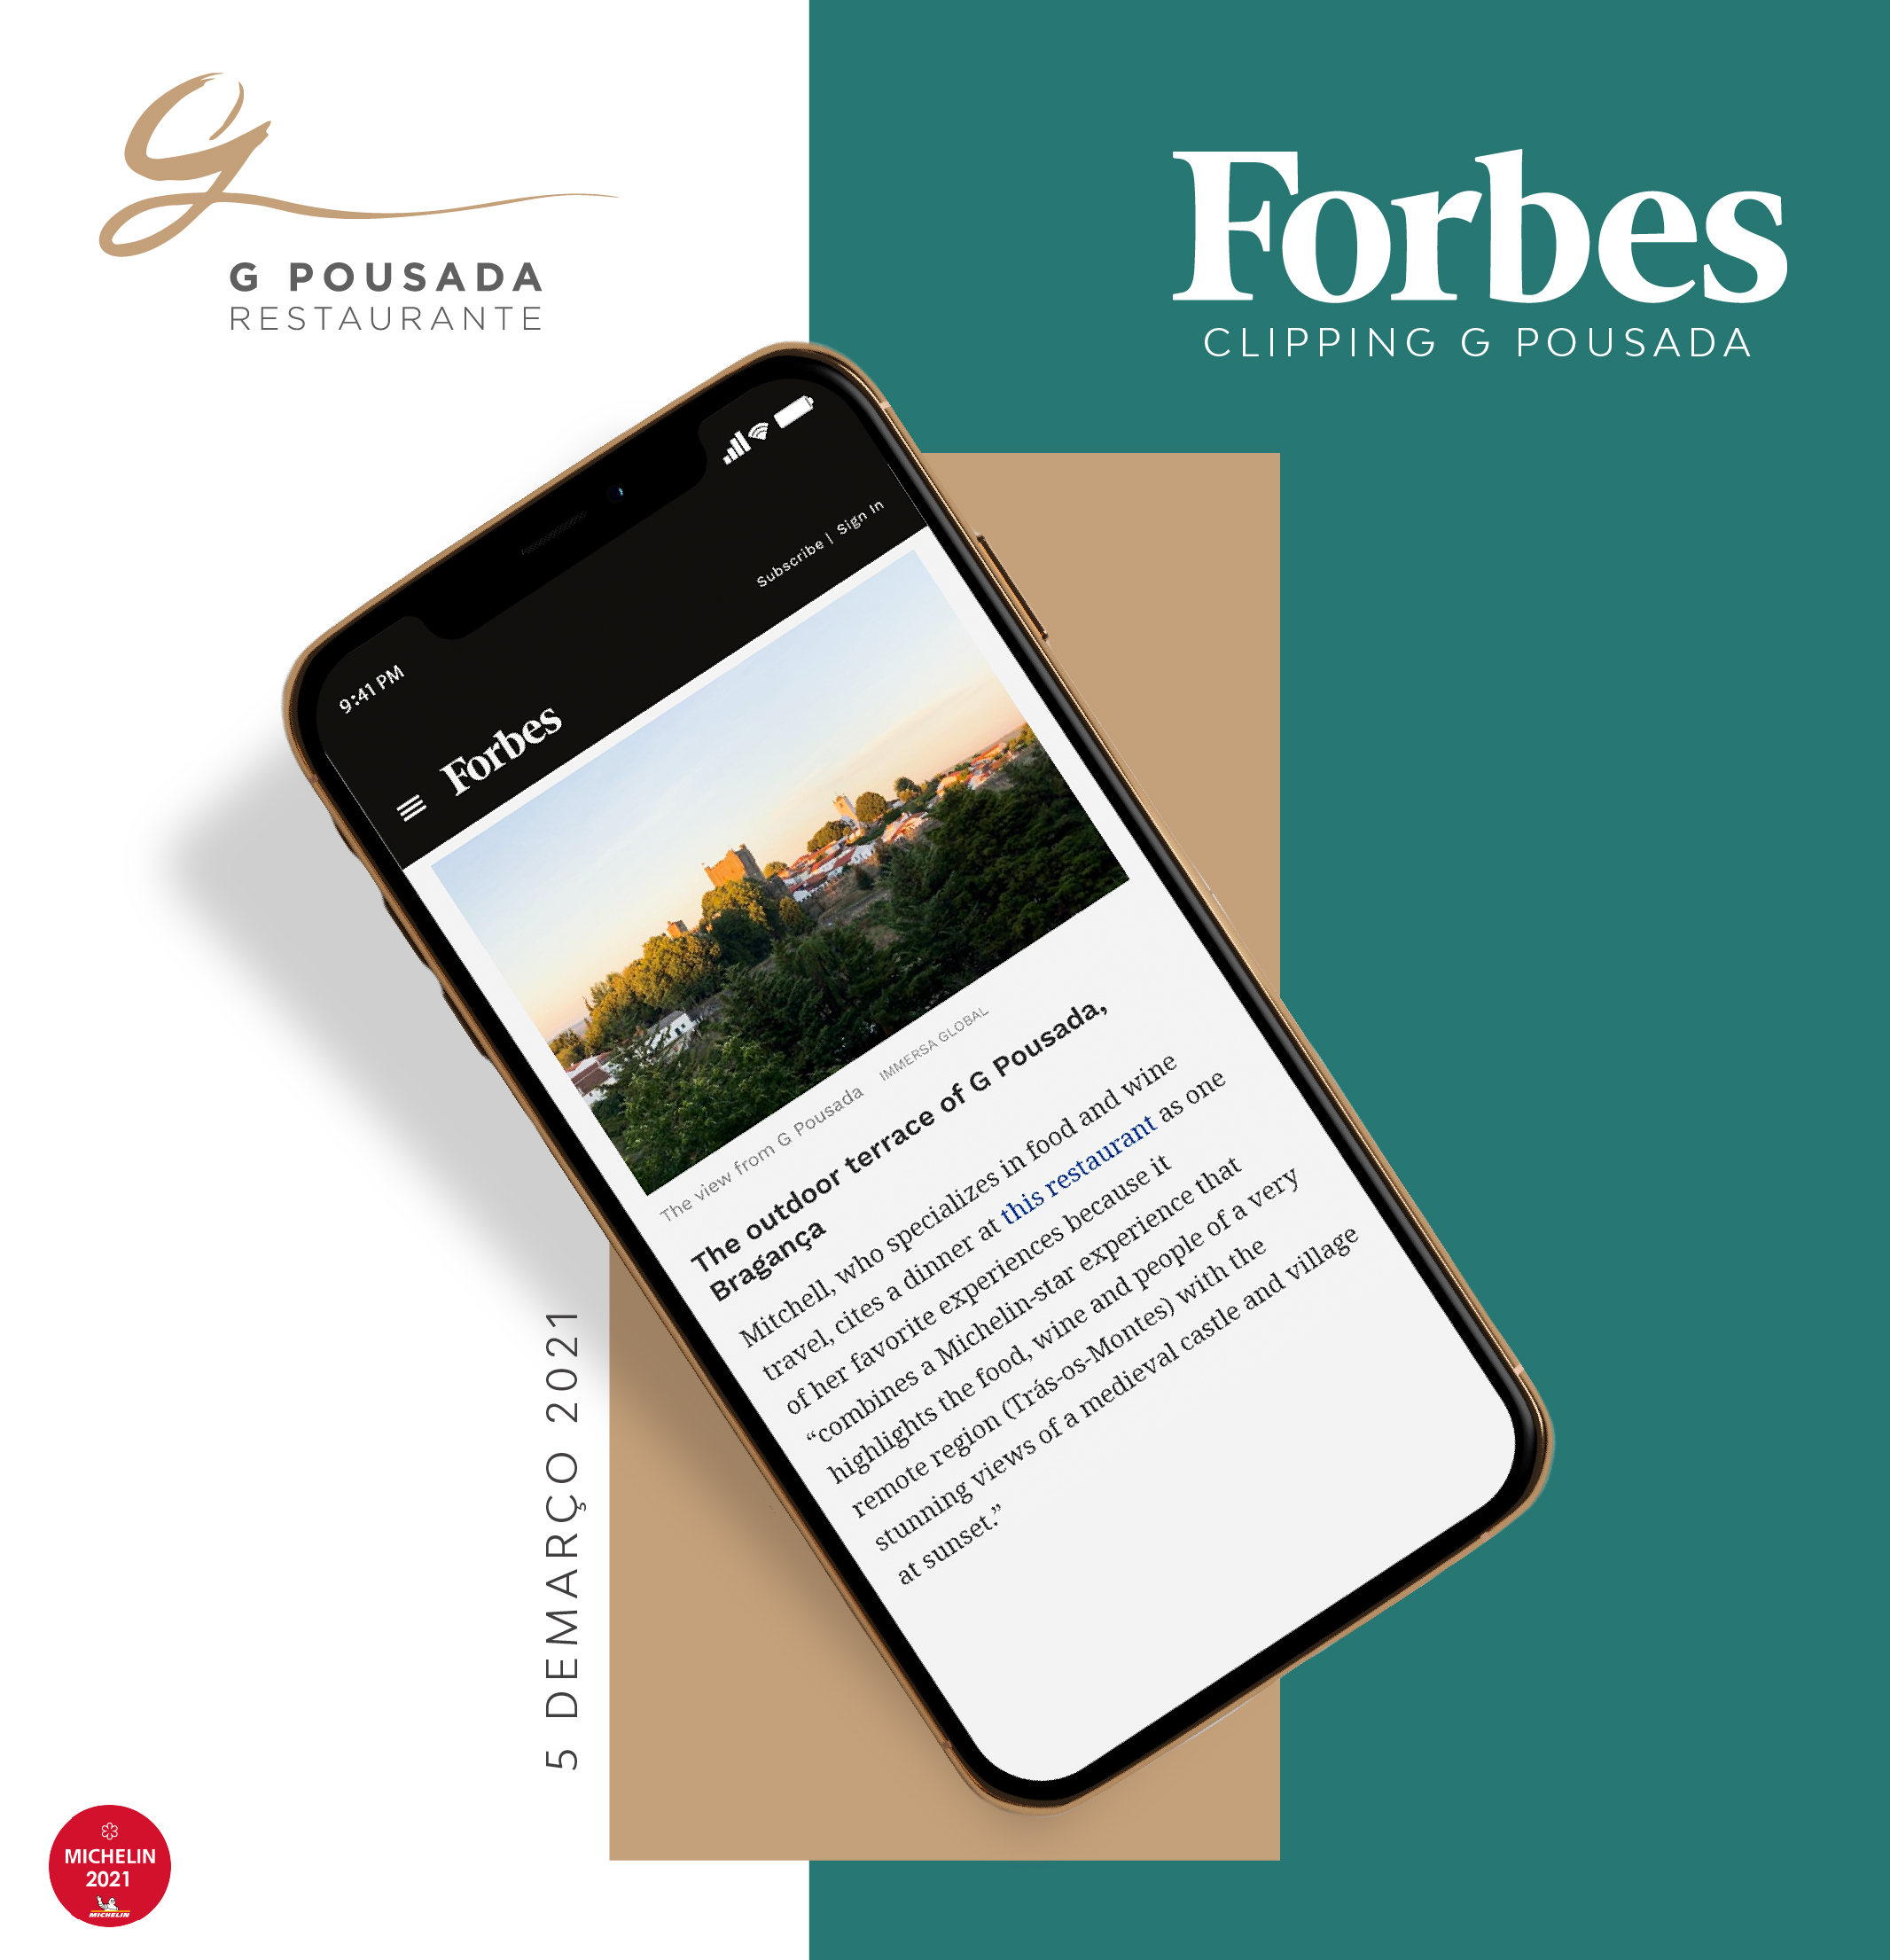 Clipping G Pousada – Forbes